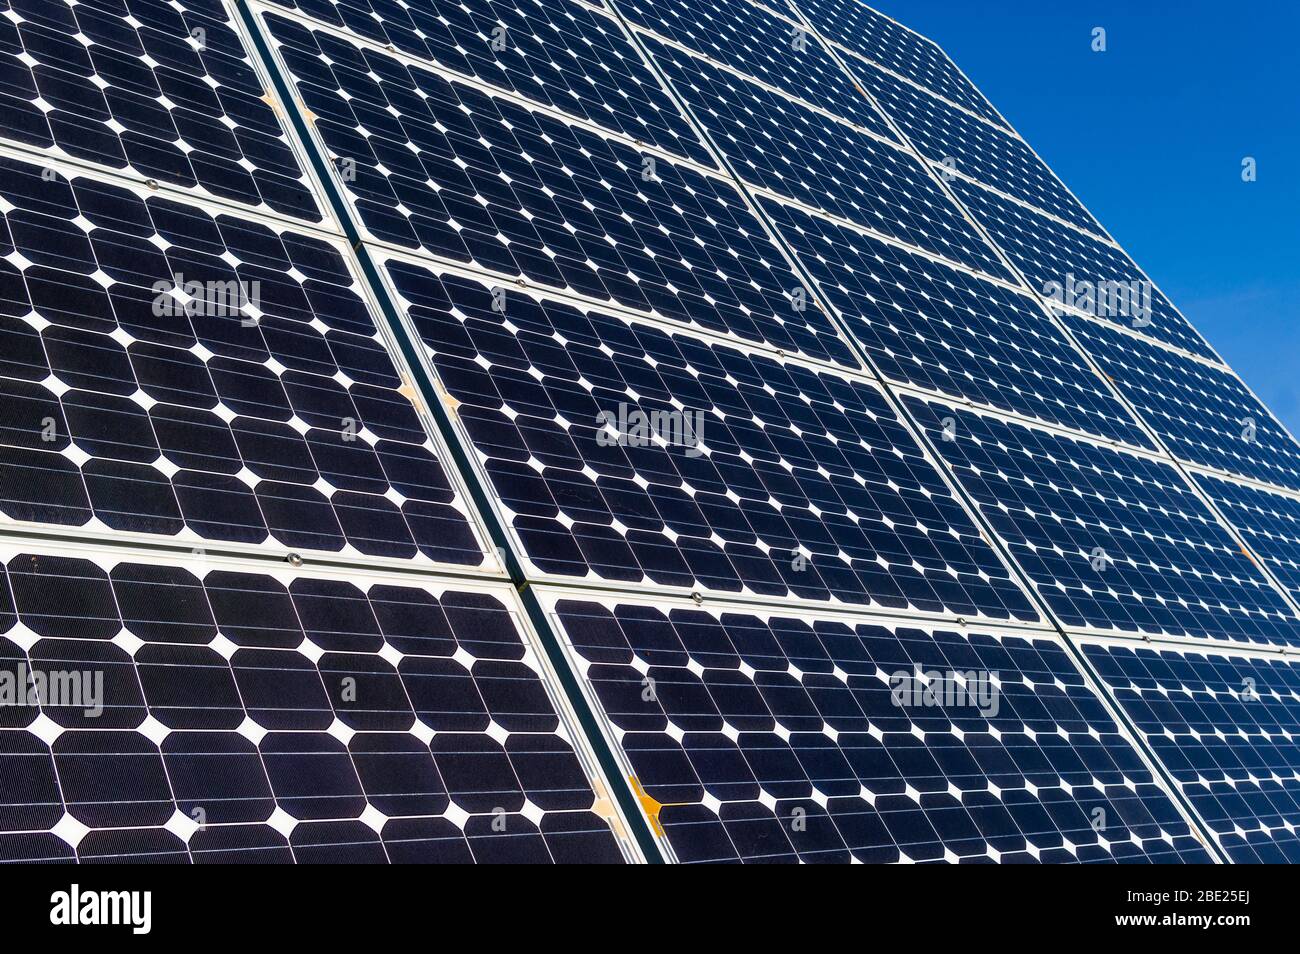 Primer plano, vista detallada de los paneles solares de una planta de energía solar en un cielo azul brillante y sin nubes Foto de stock